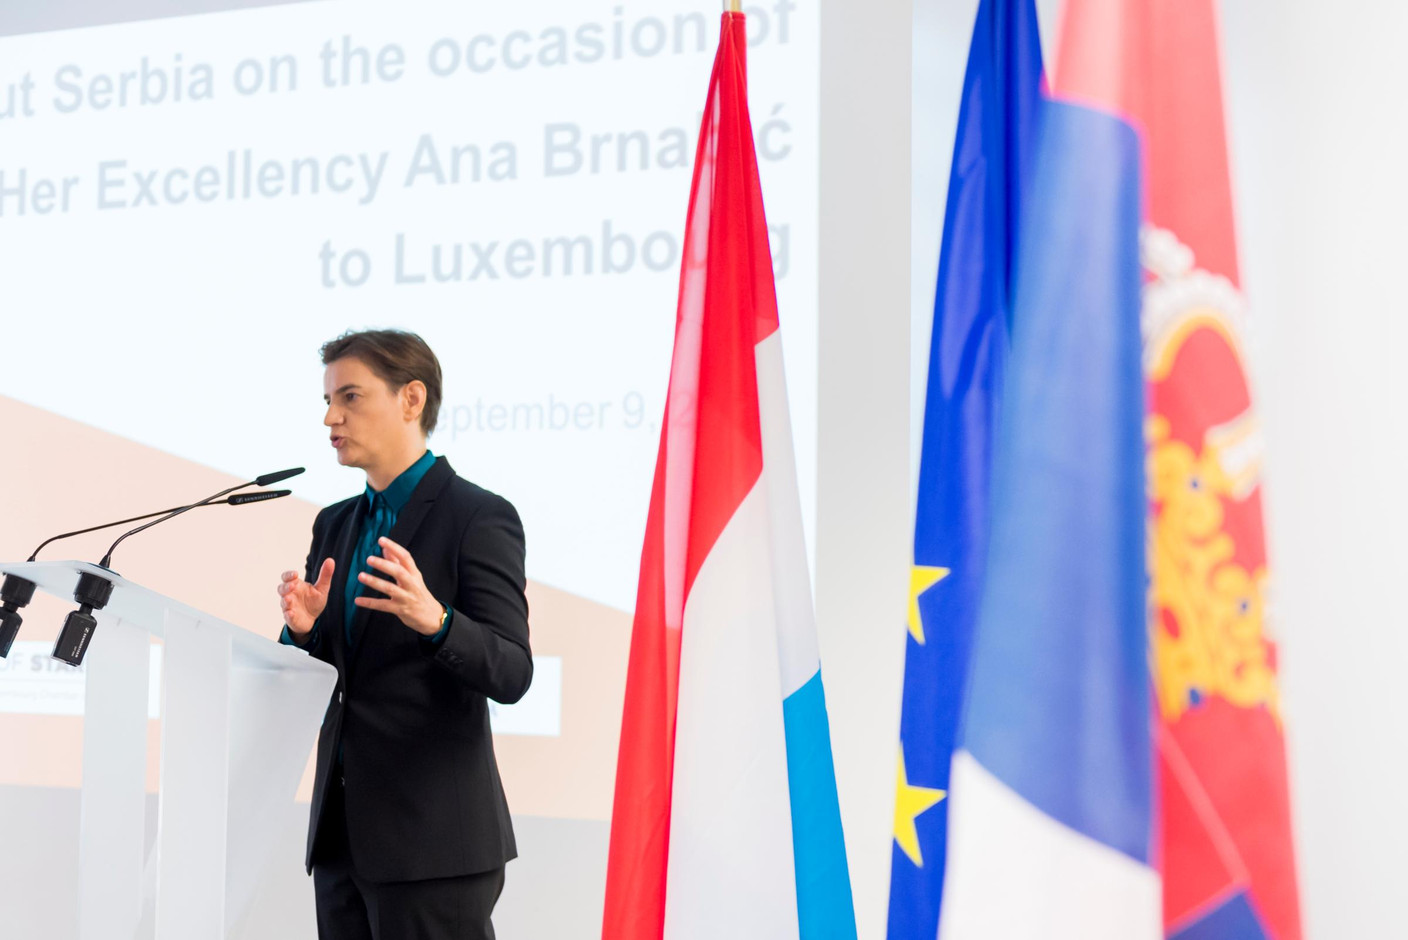 Ana Brnabic (Première ministre de la république de Serbie) (Photo: SIP / Jean-Christophe Verhaegen)